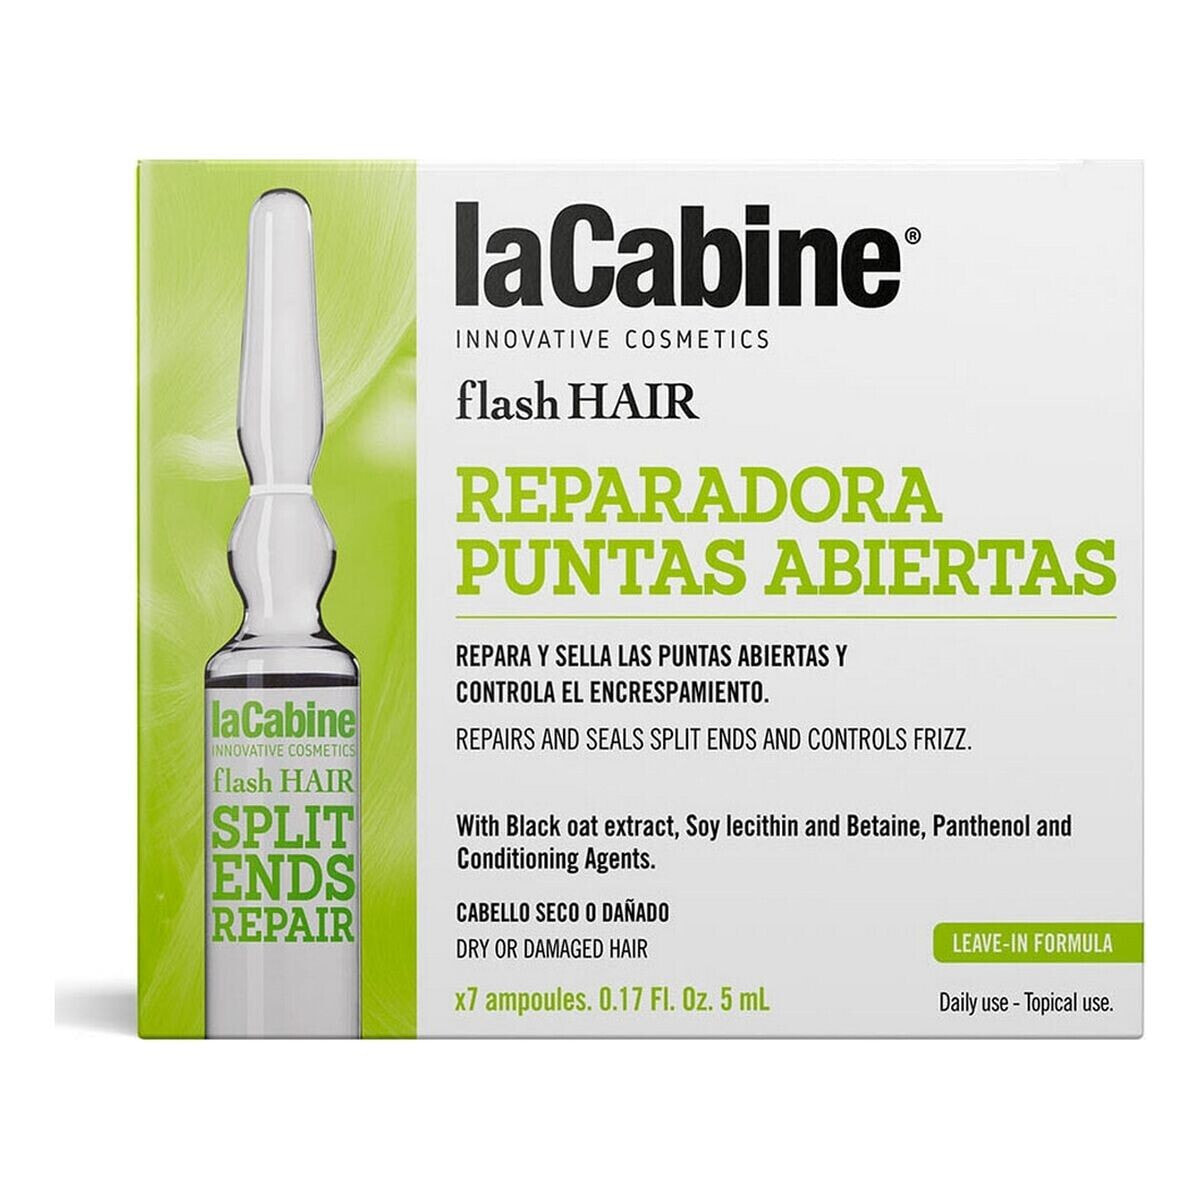 La Cabine Flash Hair Repair Ampules Восстанавливающие ампулы для поврежденных и секущихся волос 7 х 5 мл